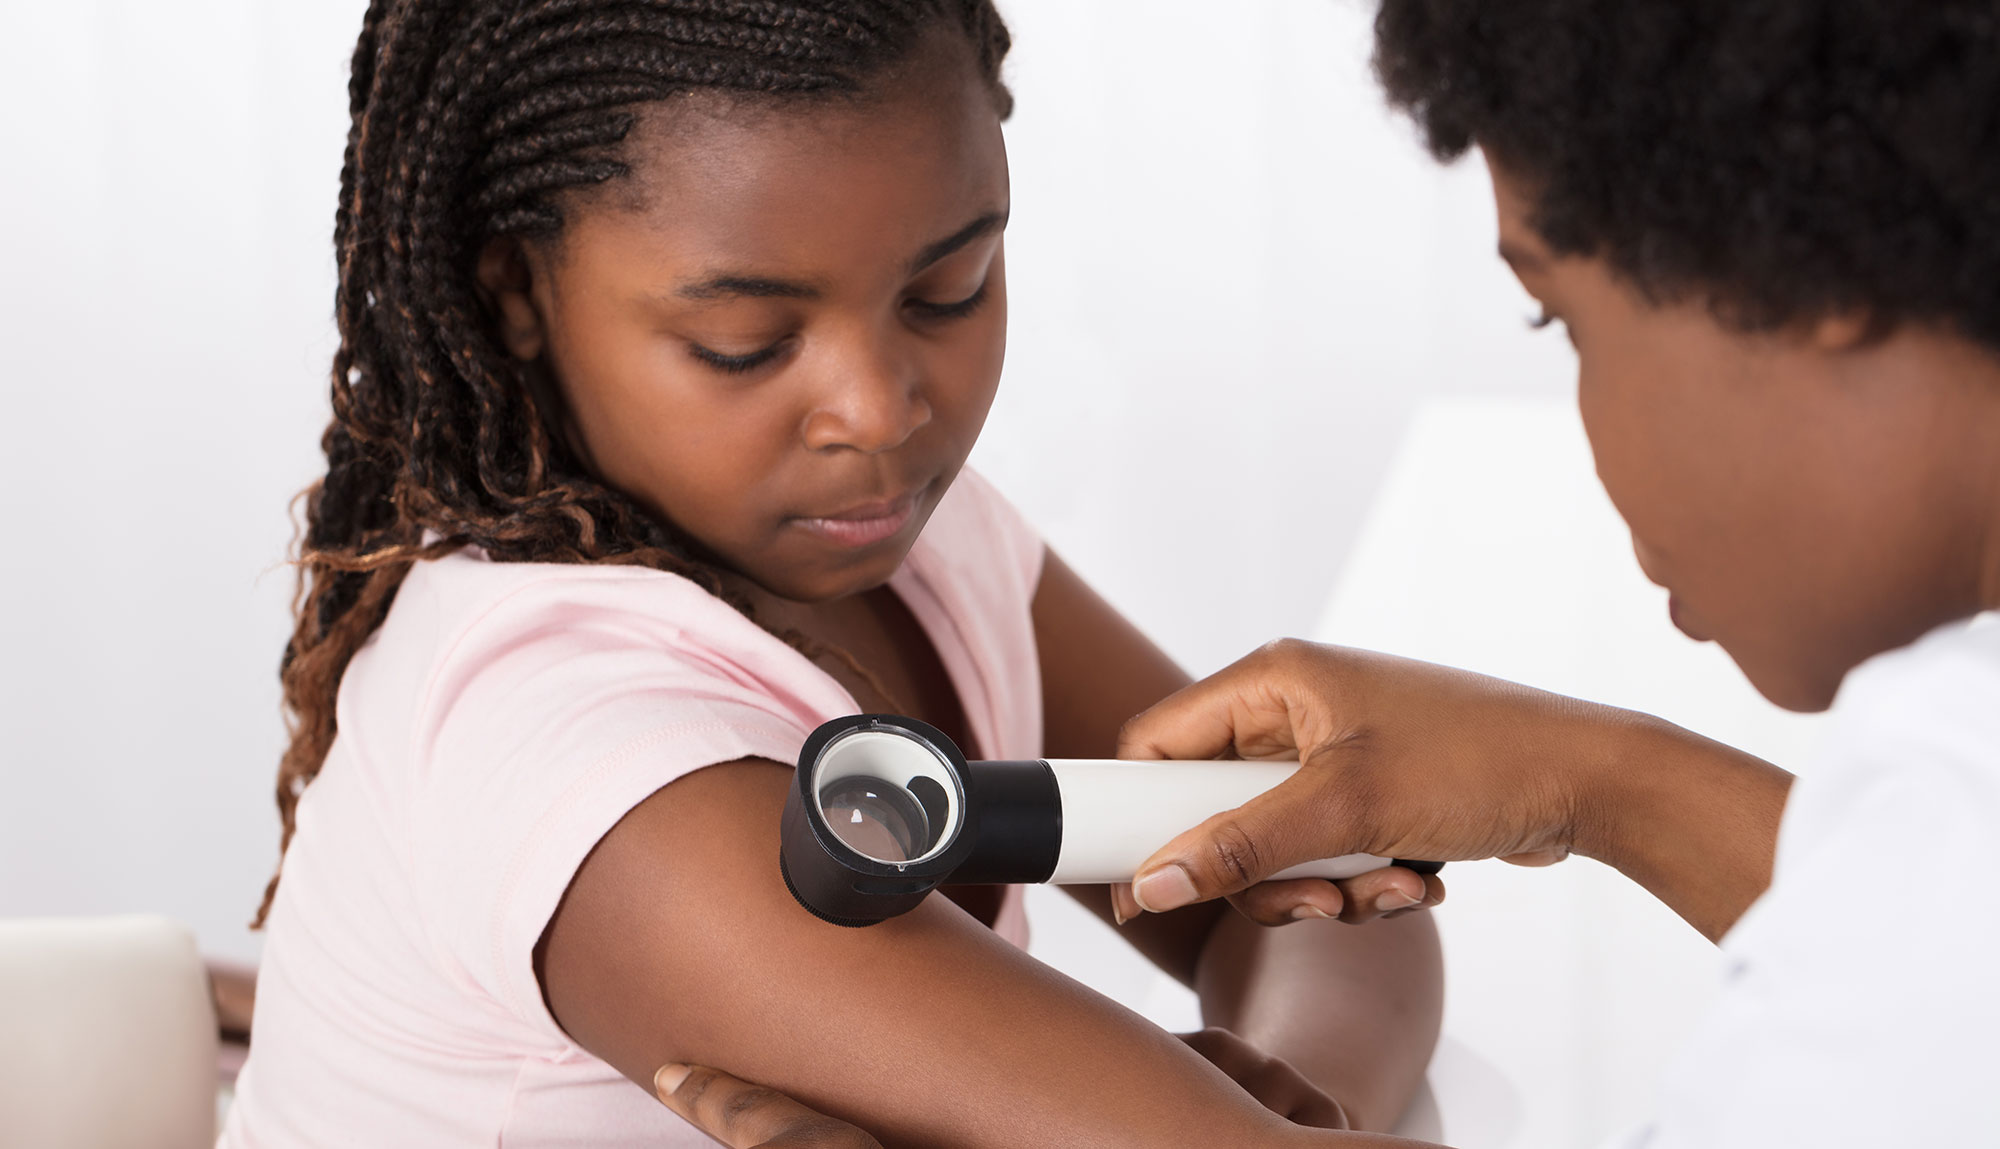 A physician looks at a vascular birthmark on a child's arm.